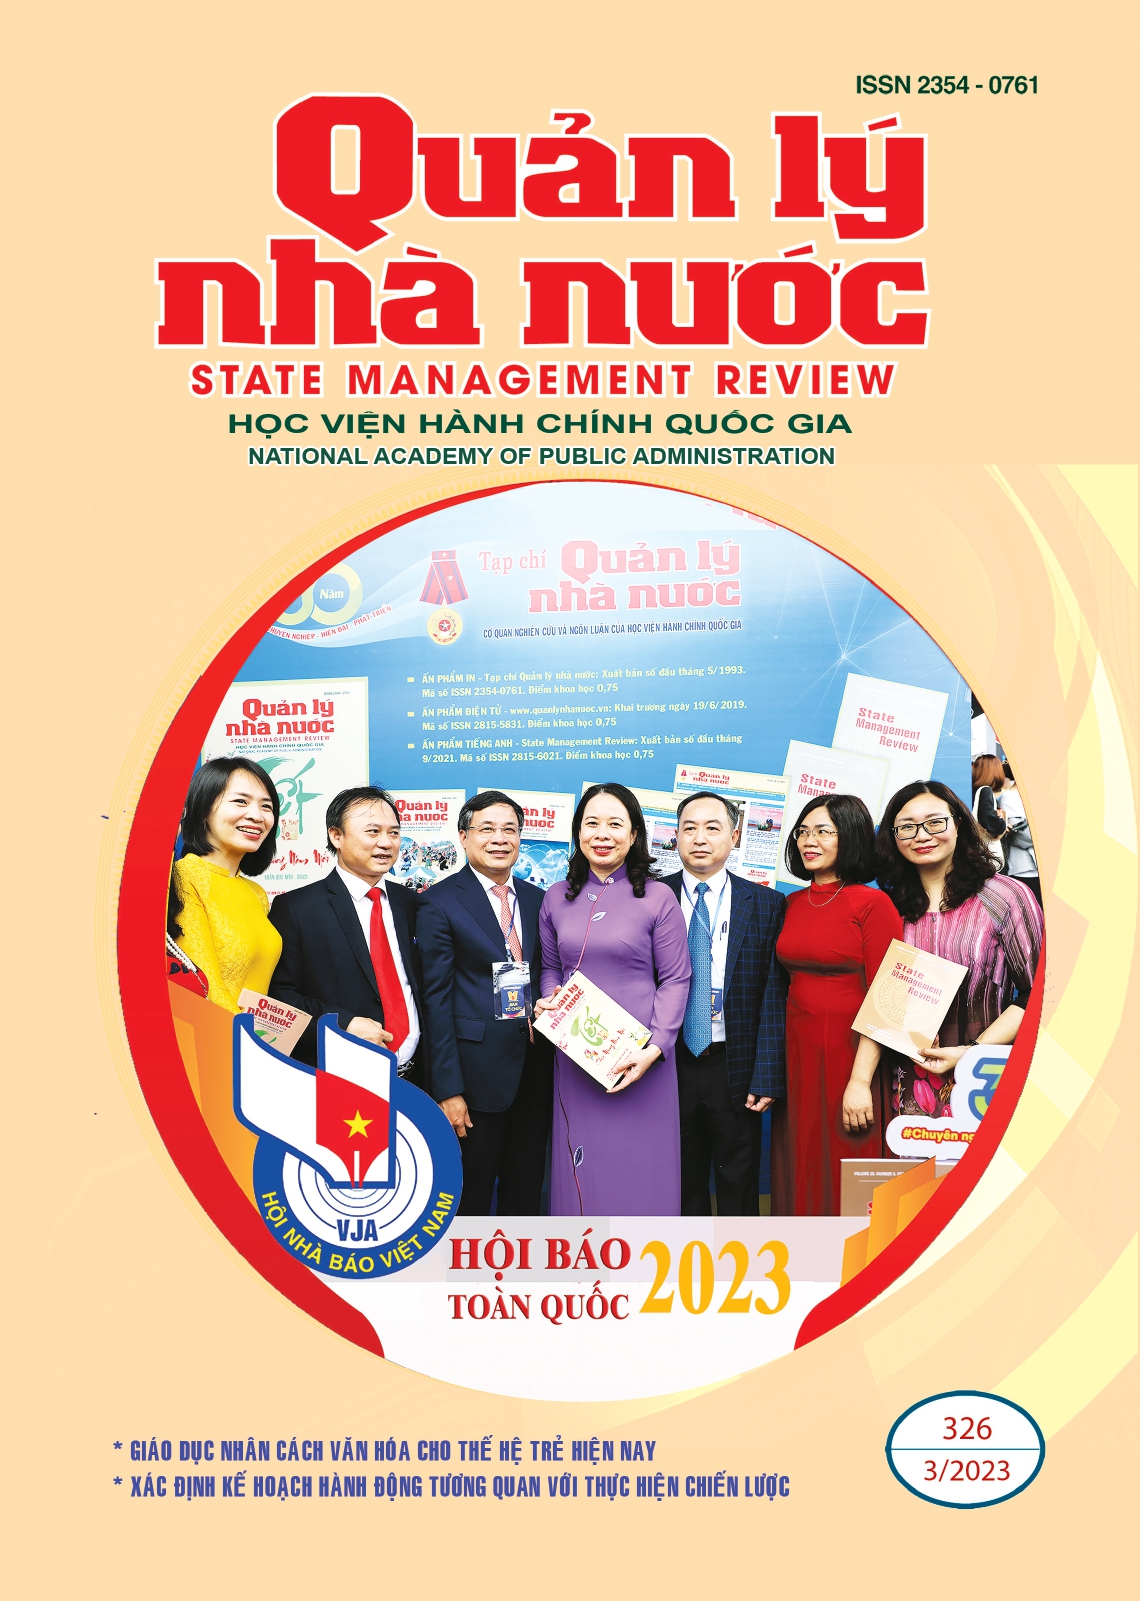 Phó Chủ tịch nước Võ Thị Ánh Xuân thăm gian trưng bày Tạp chí Quản lý nhà nước tại Hội báo toàn quốc 2023 (ngày 17/3/2023)